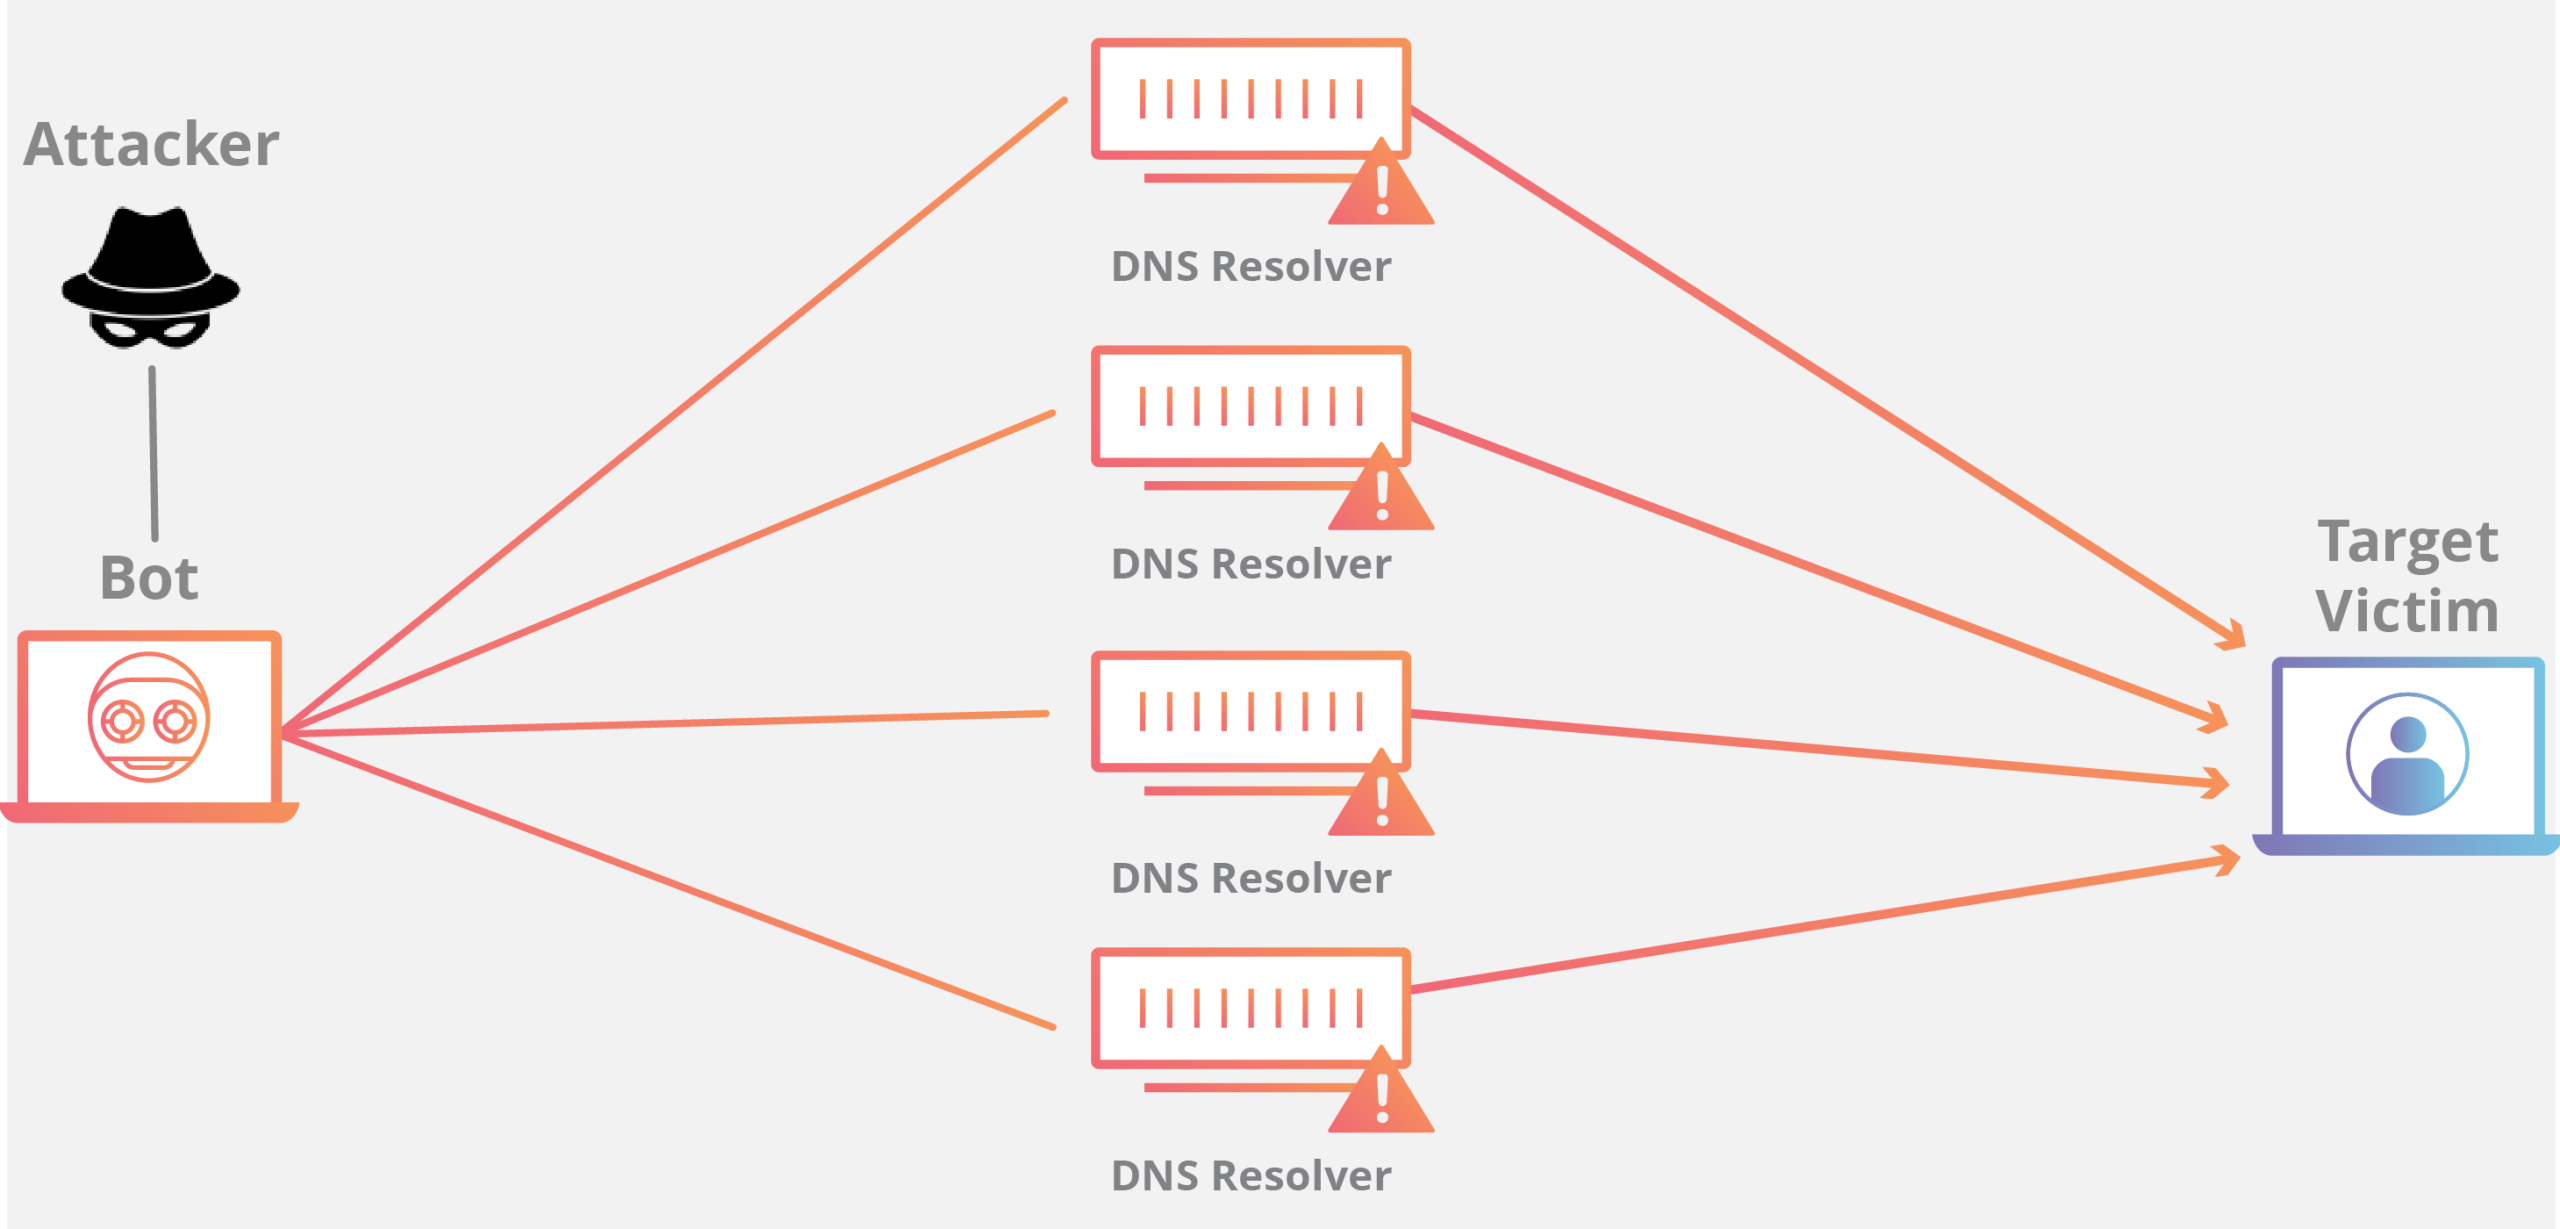 ntp-amplification-botnet-ddos-attack